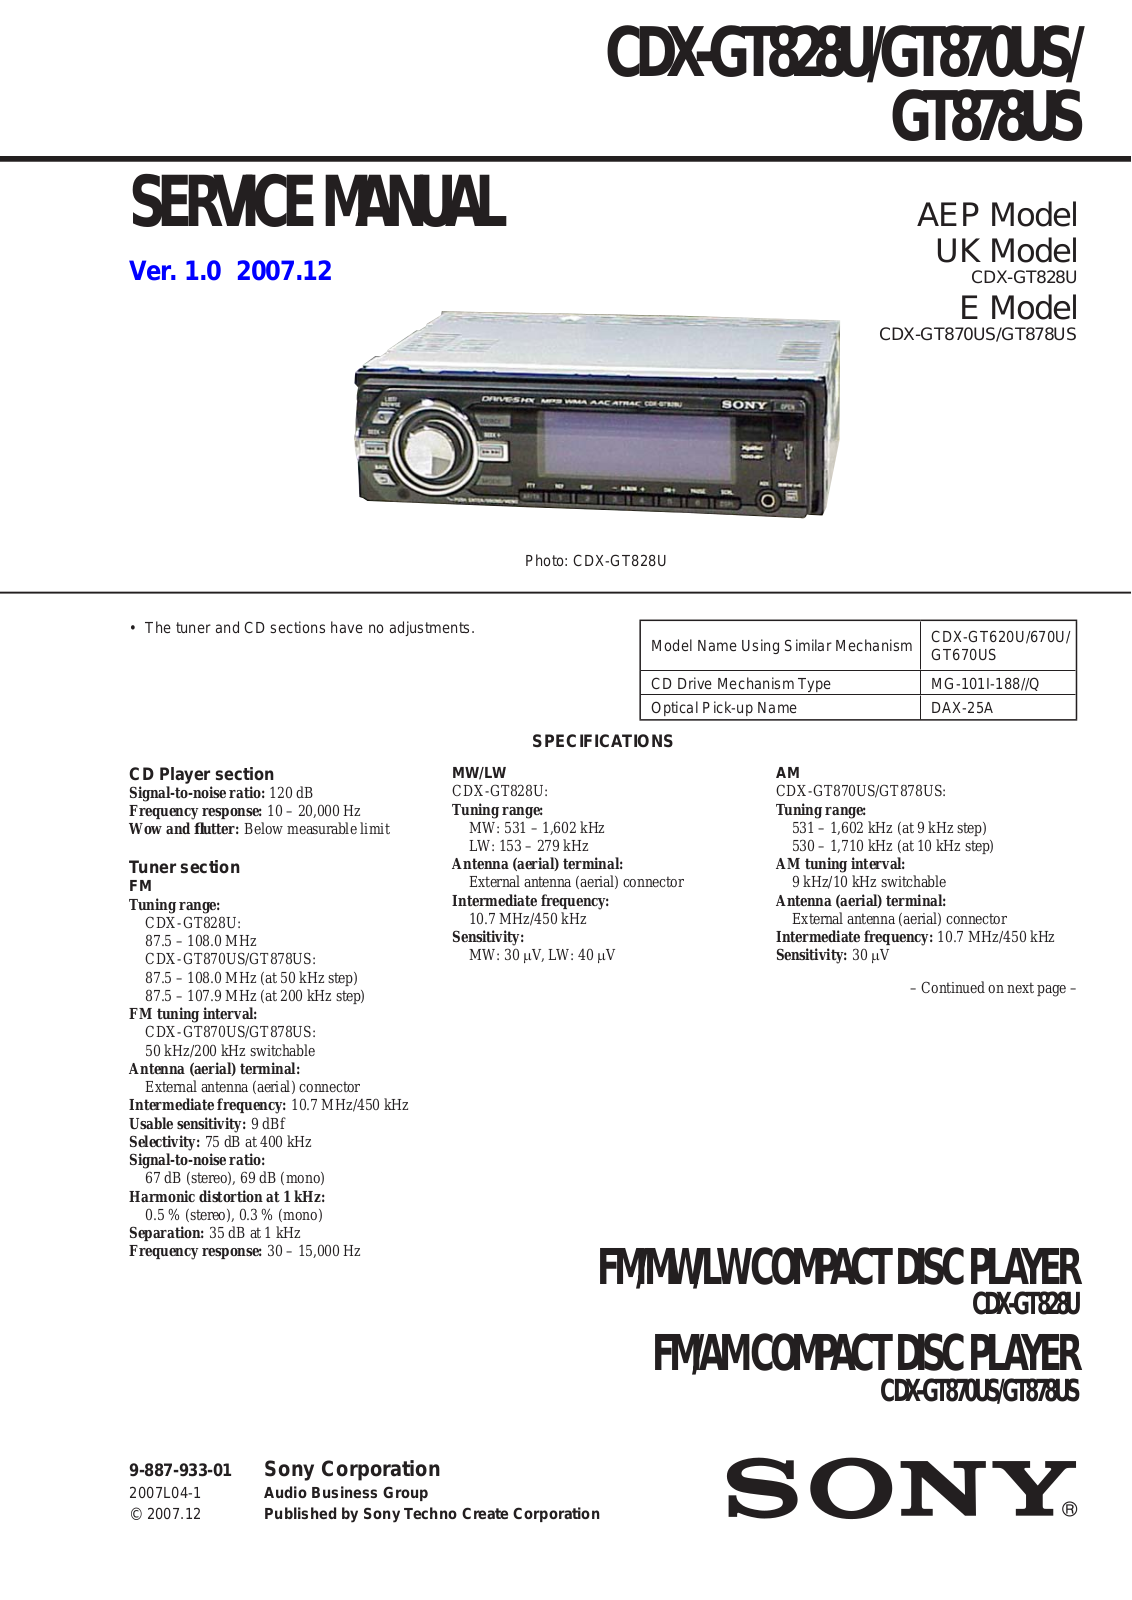 Sony CDXGT-820-U, CDXGT-870-US, CDXGT-878-US Service manual